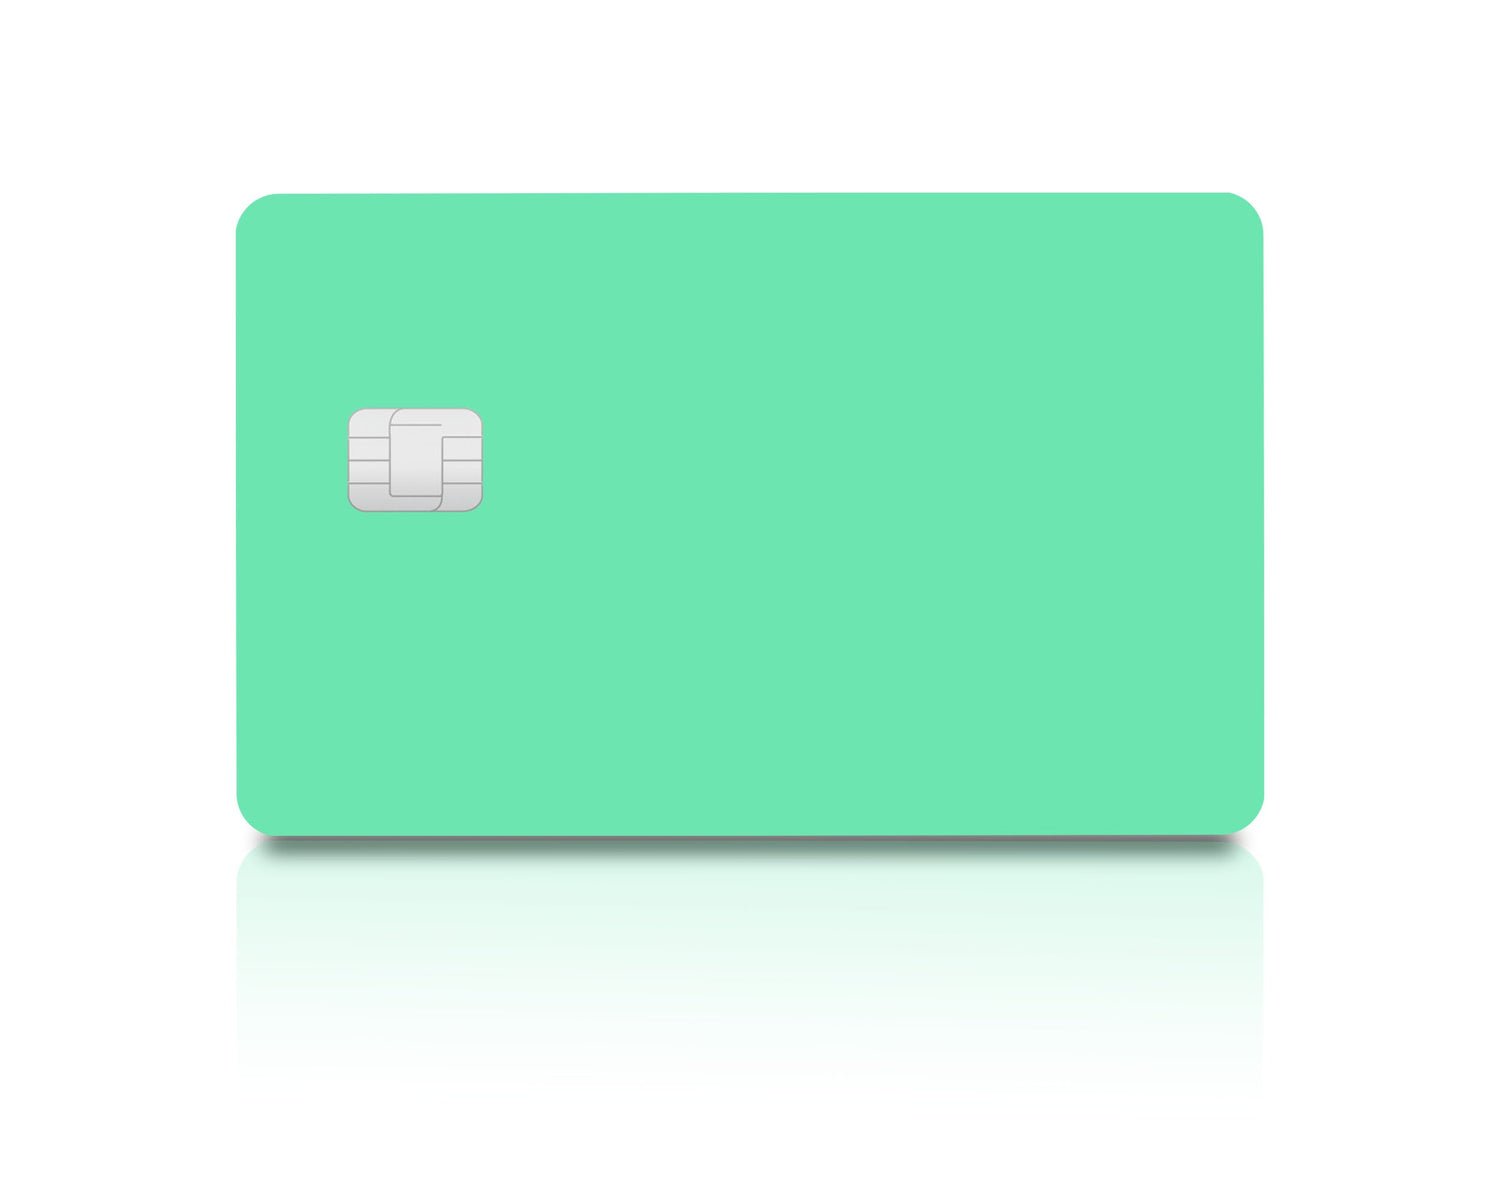 Flex Designs Credit Card Seafoam Full Skins - Pattern  & Debit Card Skin